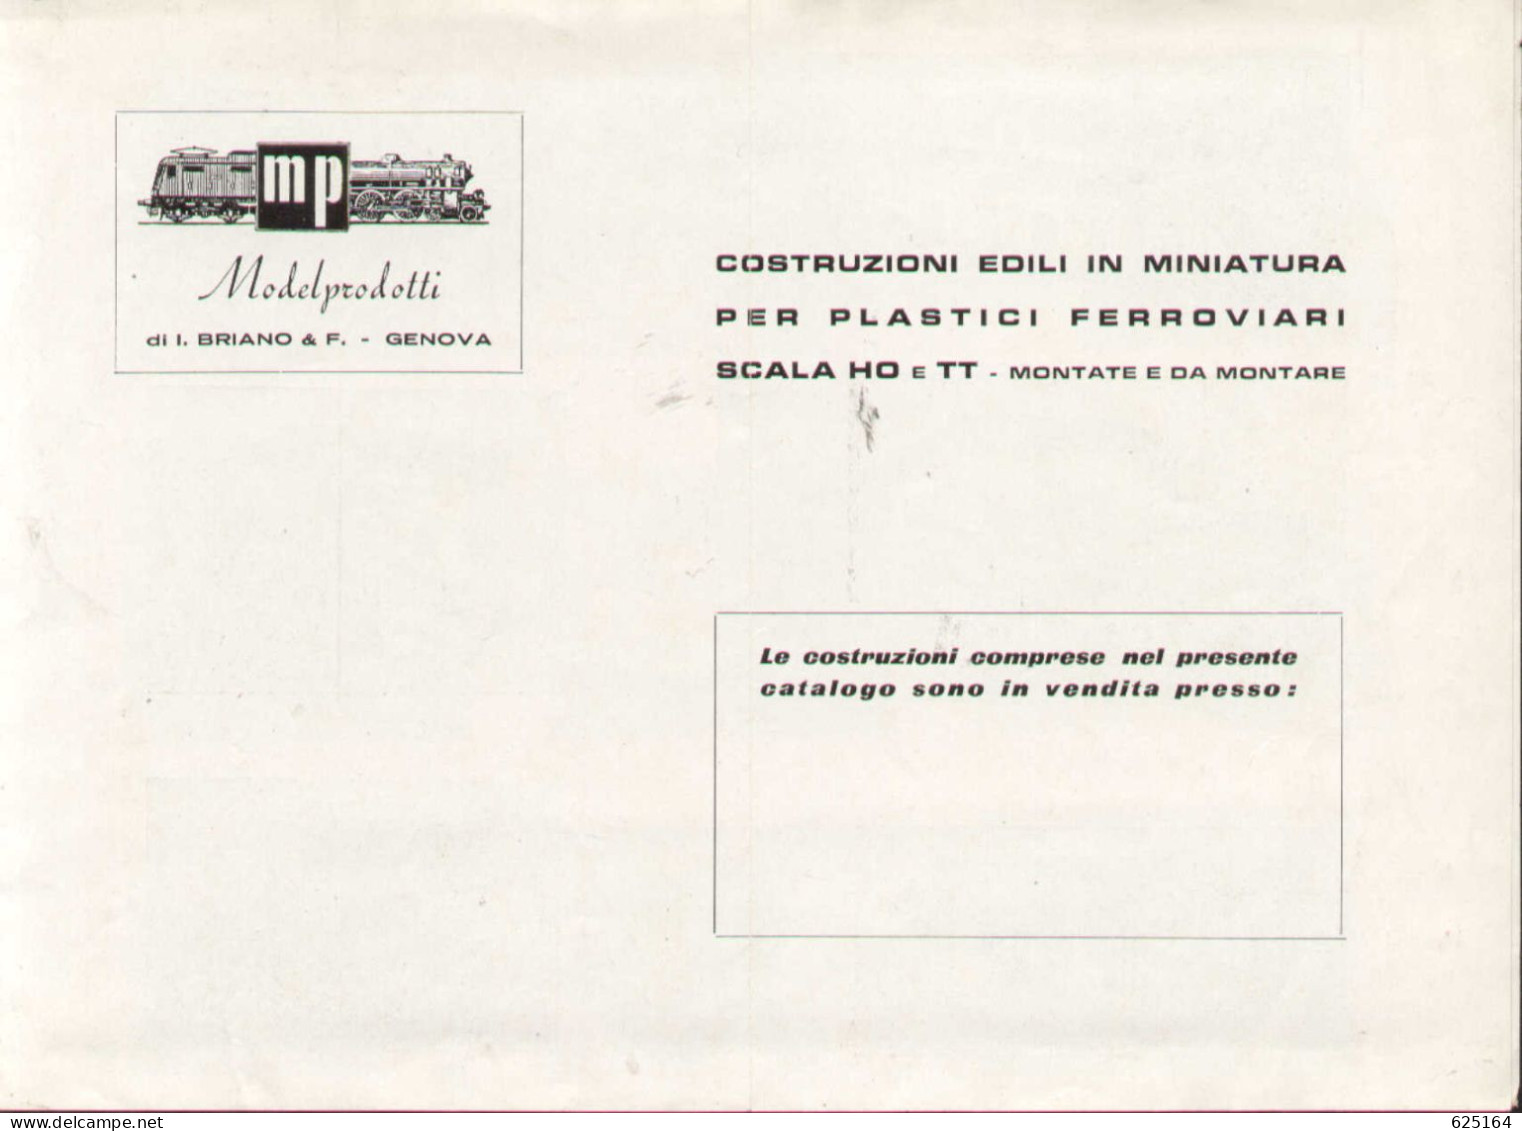 Catalogue MP ModelProdotti 1959? Ed. Italo Briano Genova Accessori HO - En Italien - Non Classés